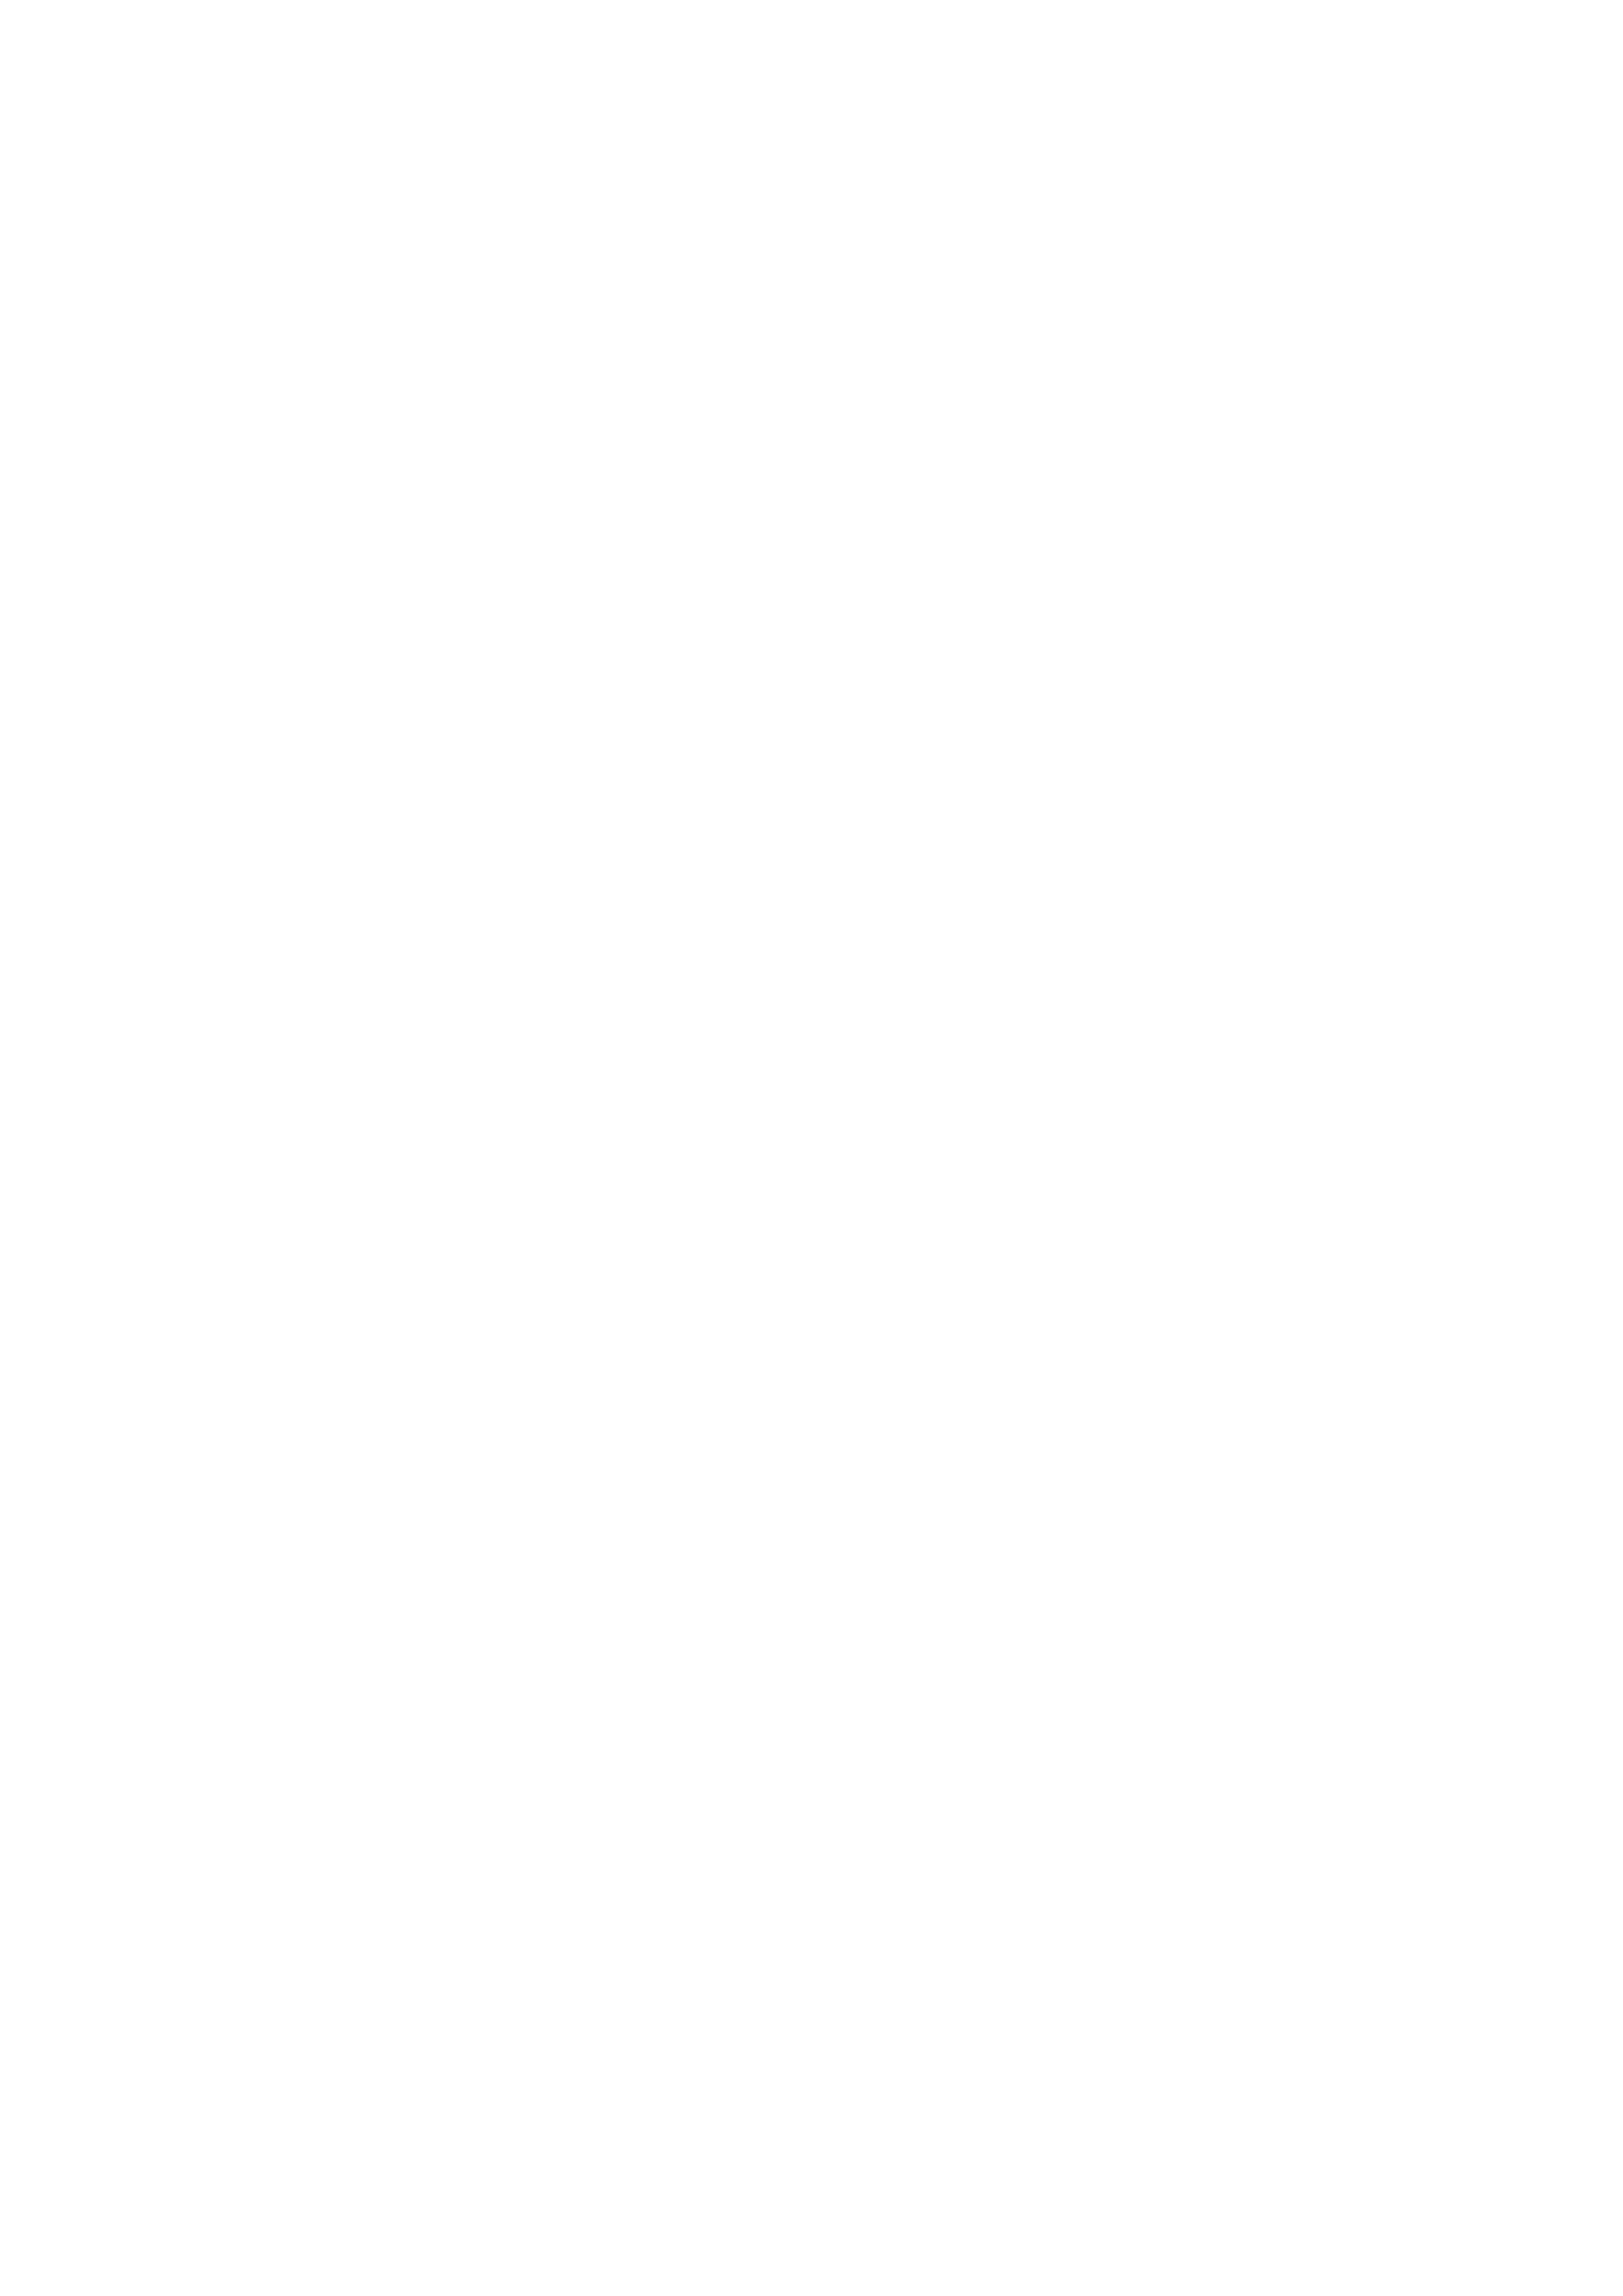 Tři MP Zlín logo bílé